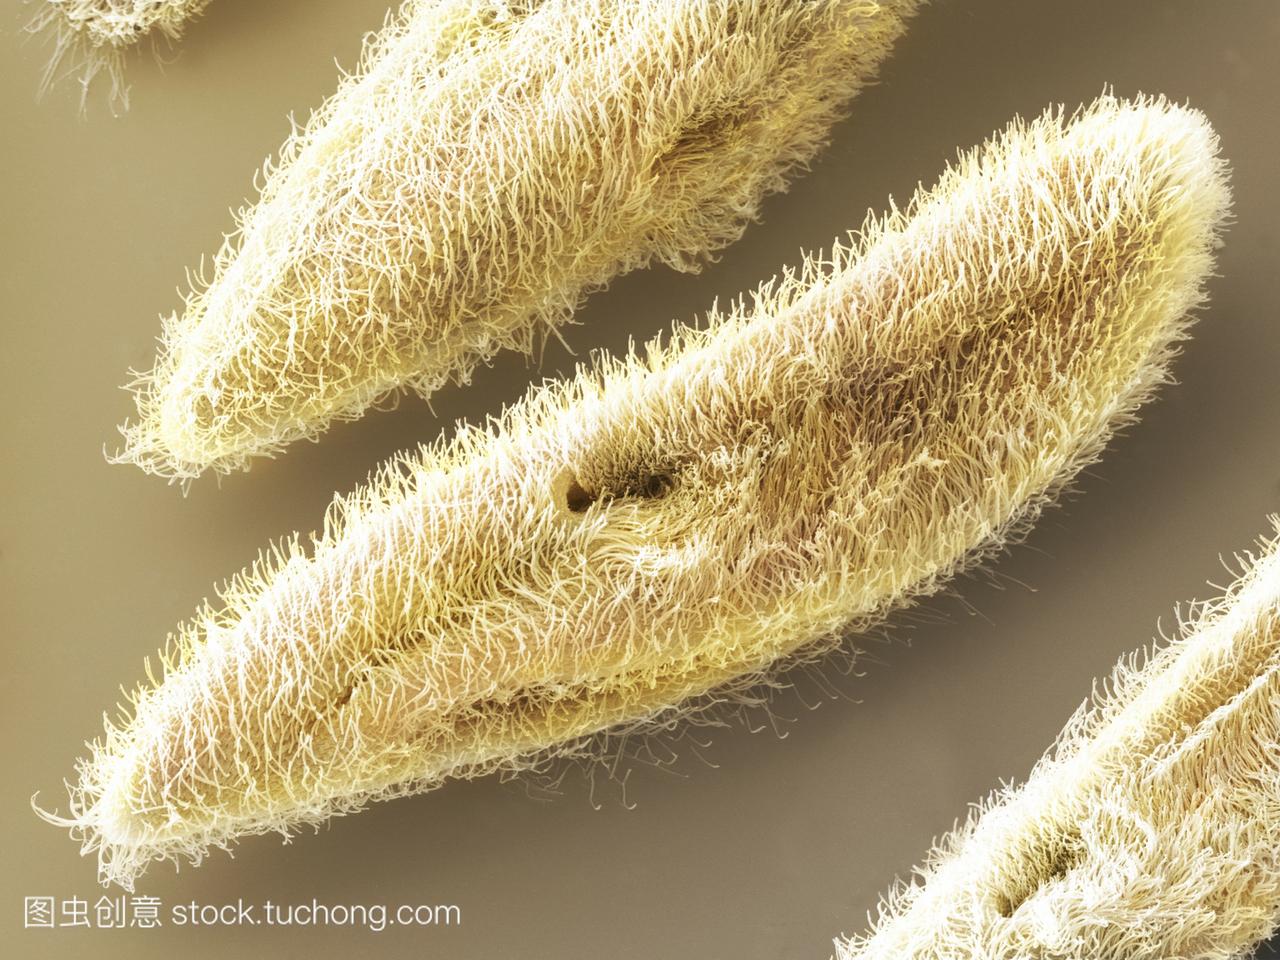 电子显微镜sem的草履虫。这些单细胞生物是水